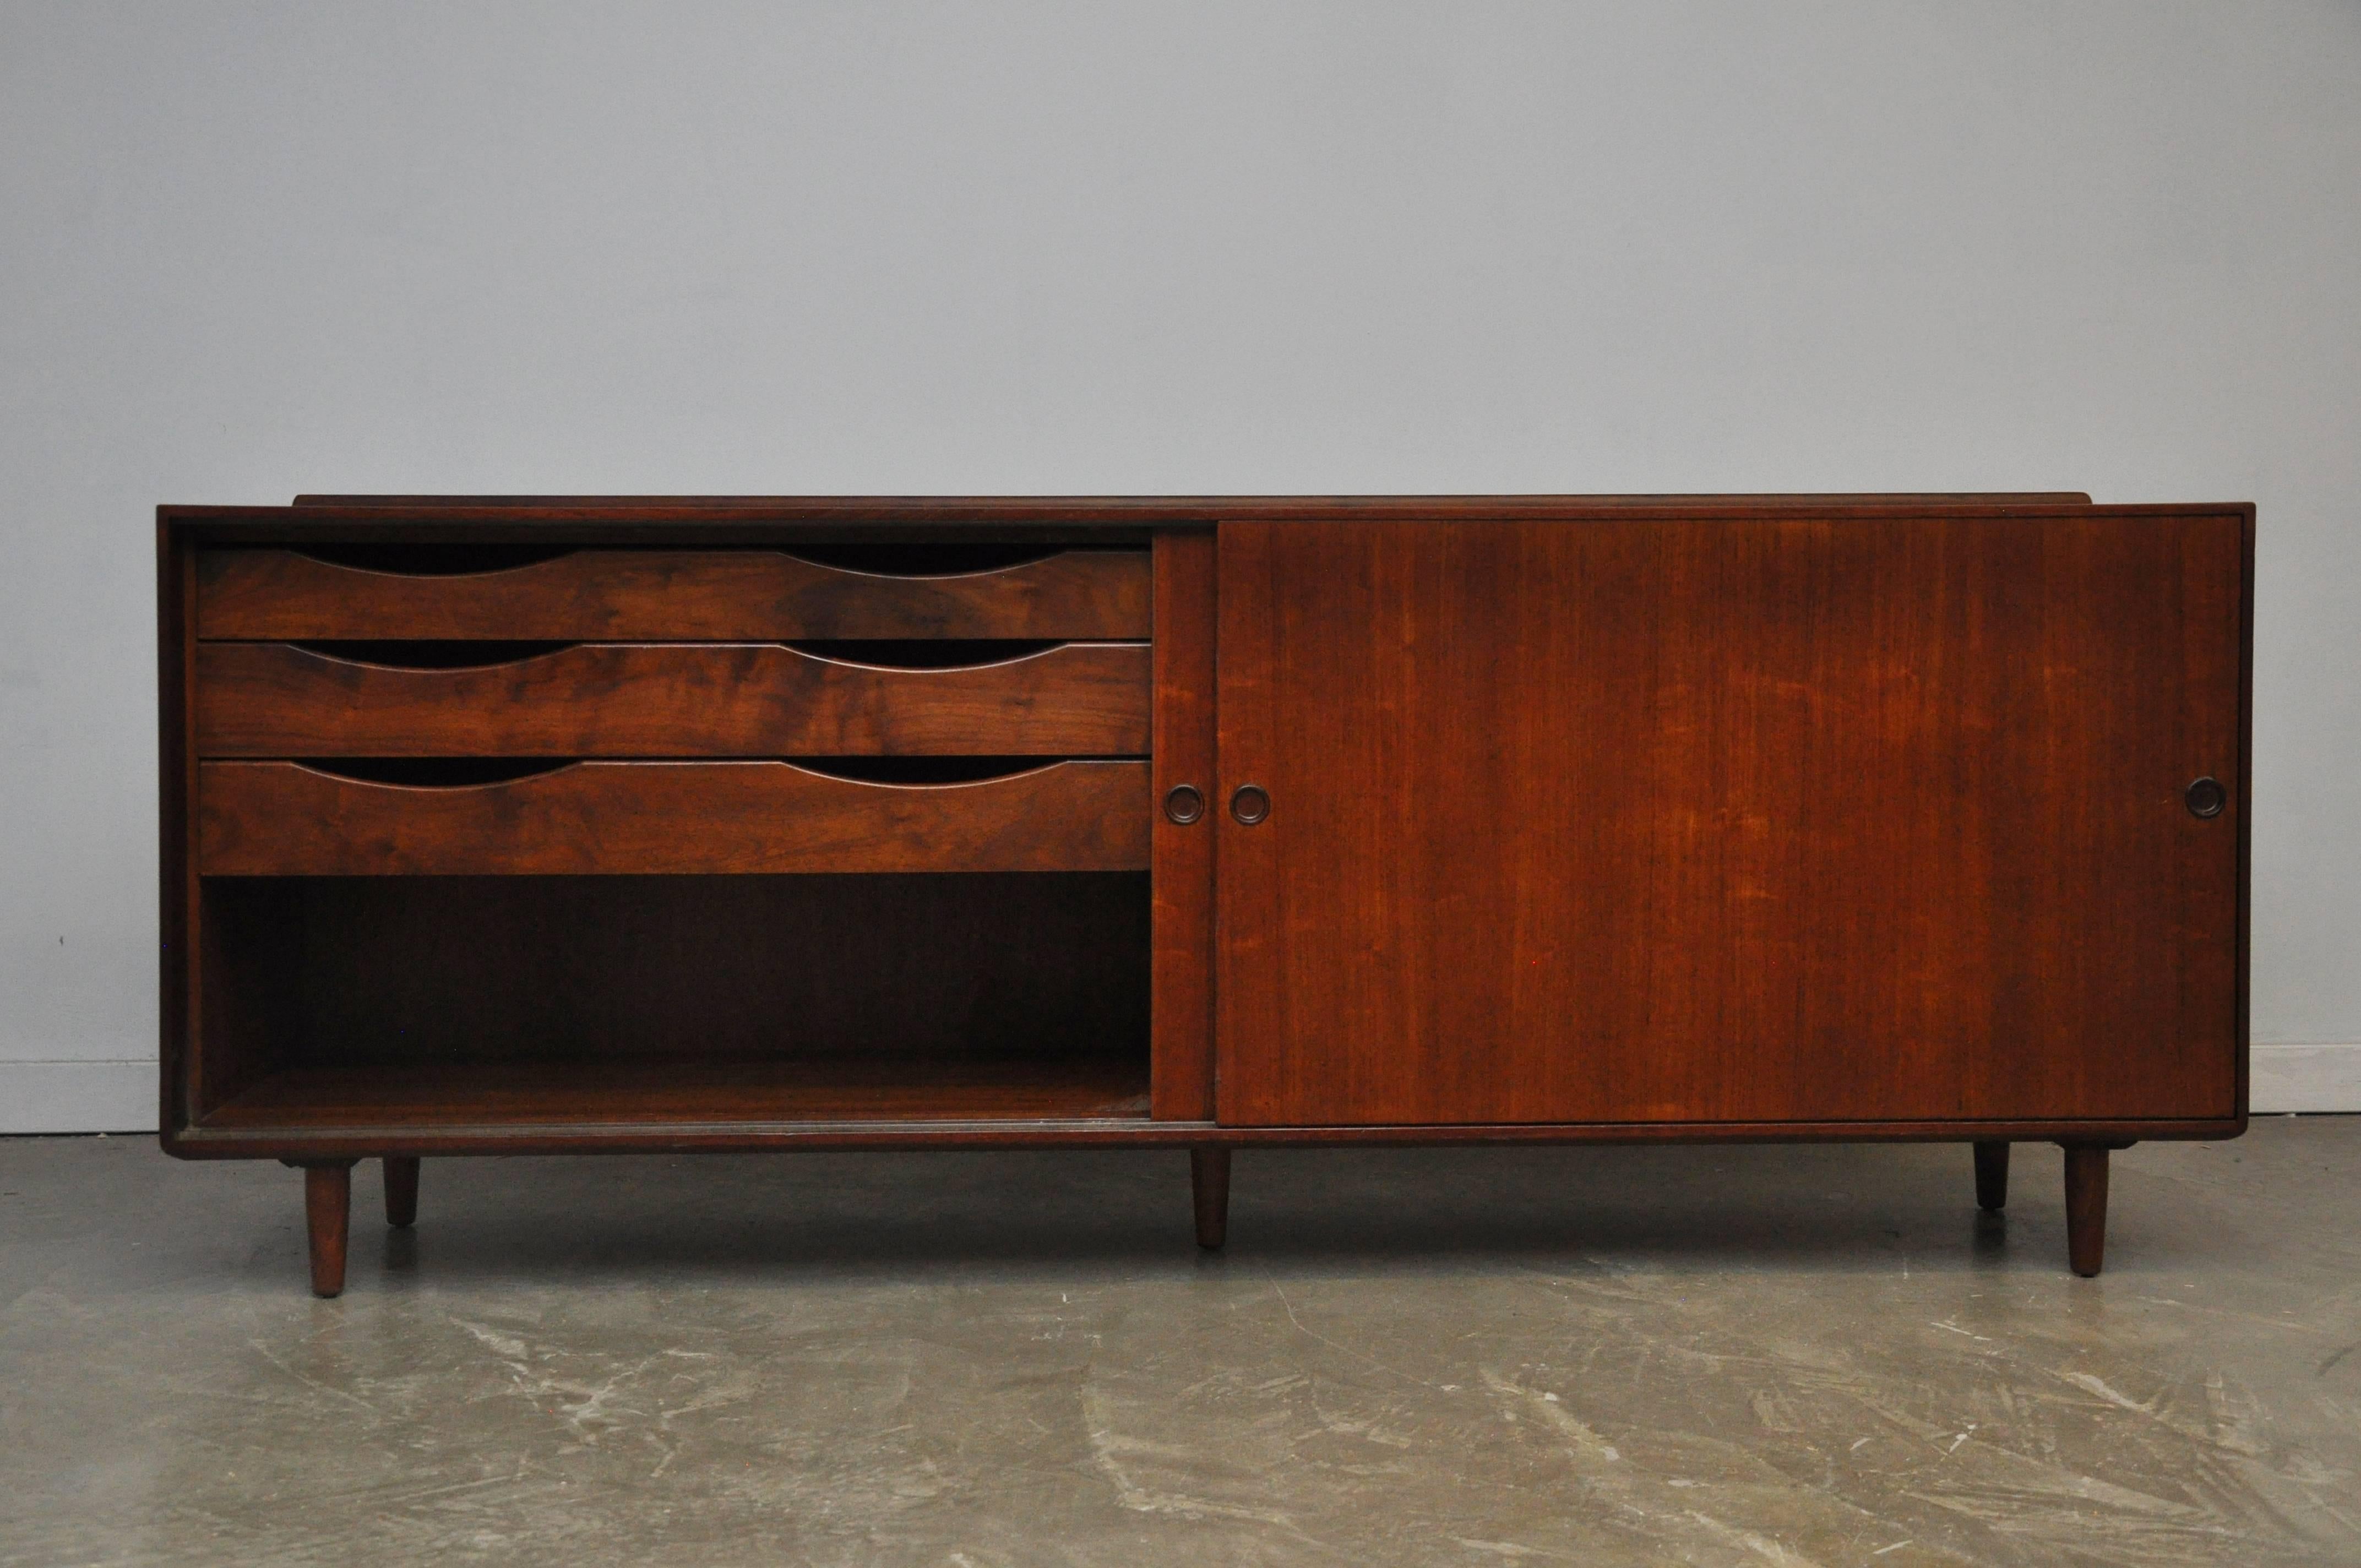 Walnut sideboard by Finn Juhl for Baker. Beautifully restored cabinet with plenty of storage.